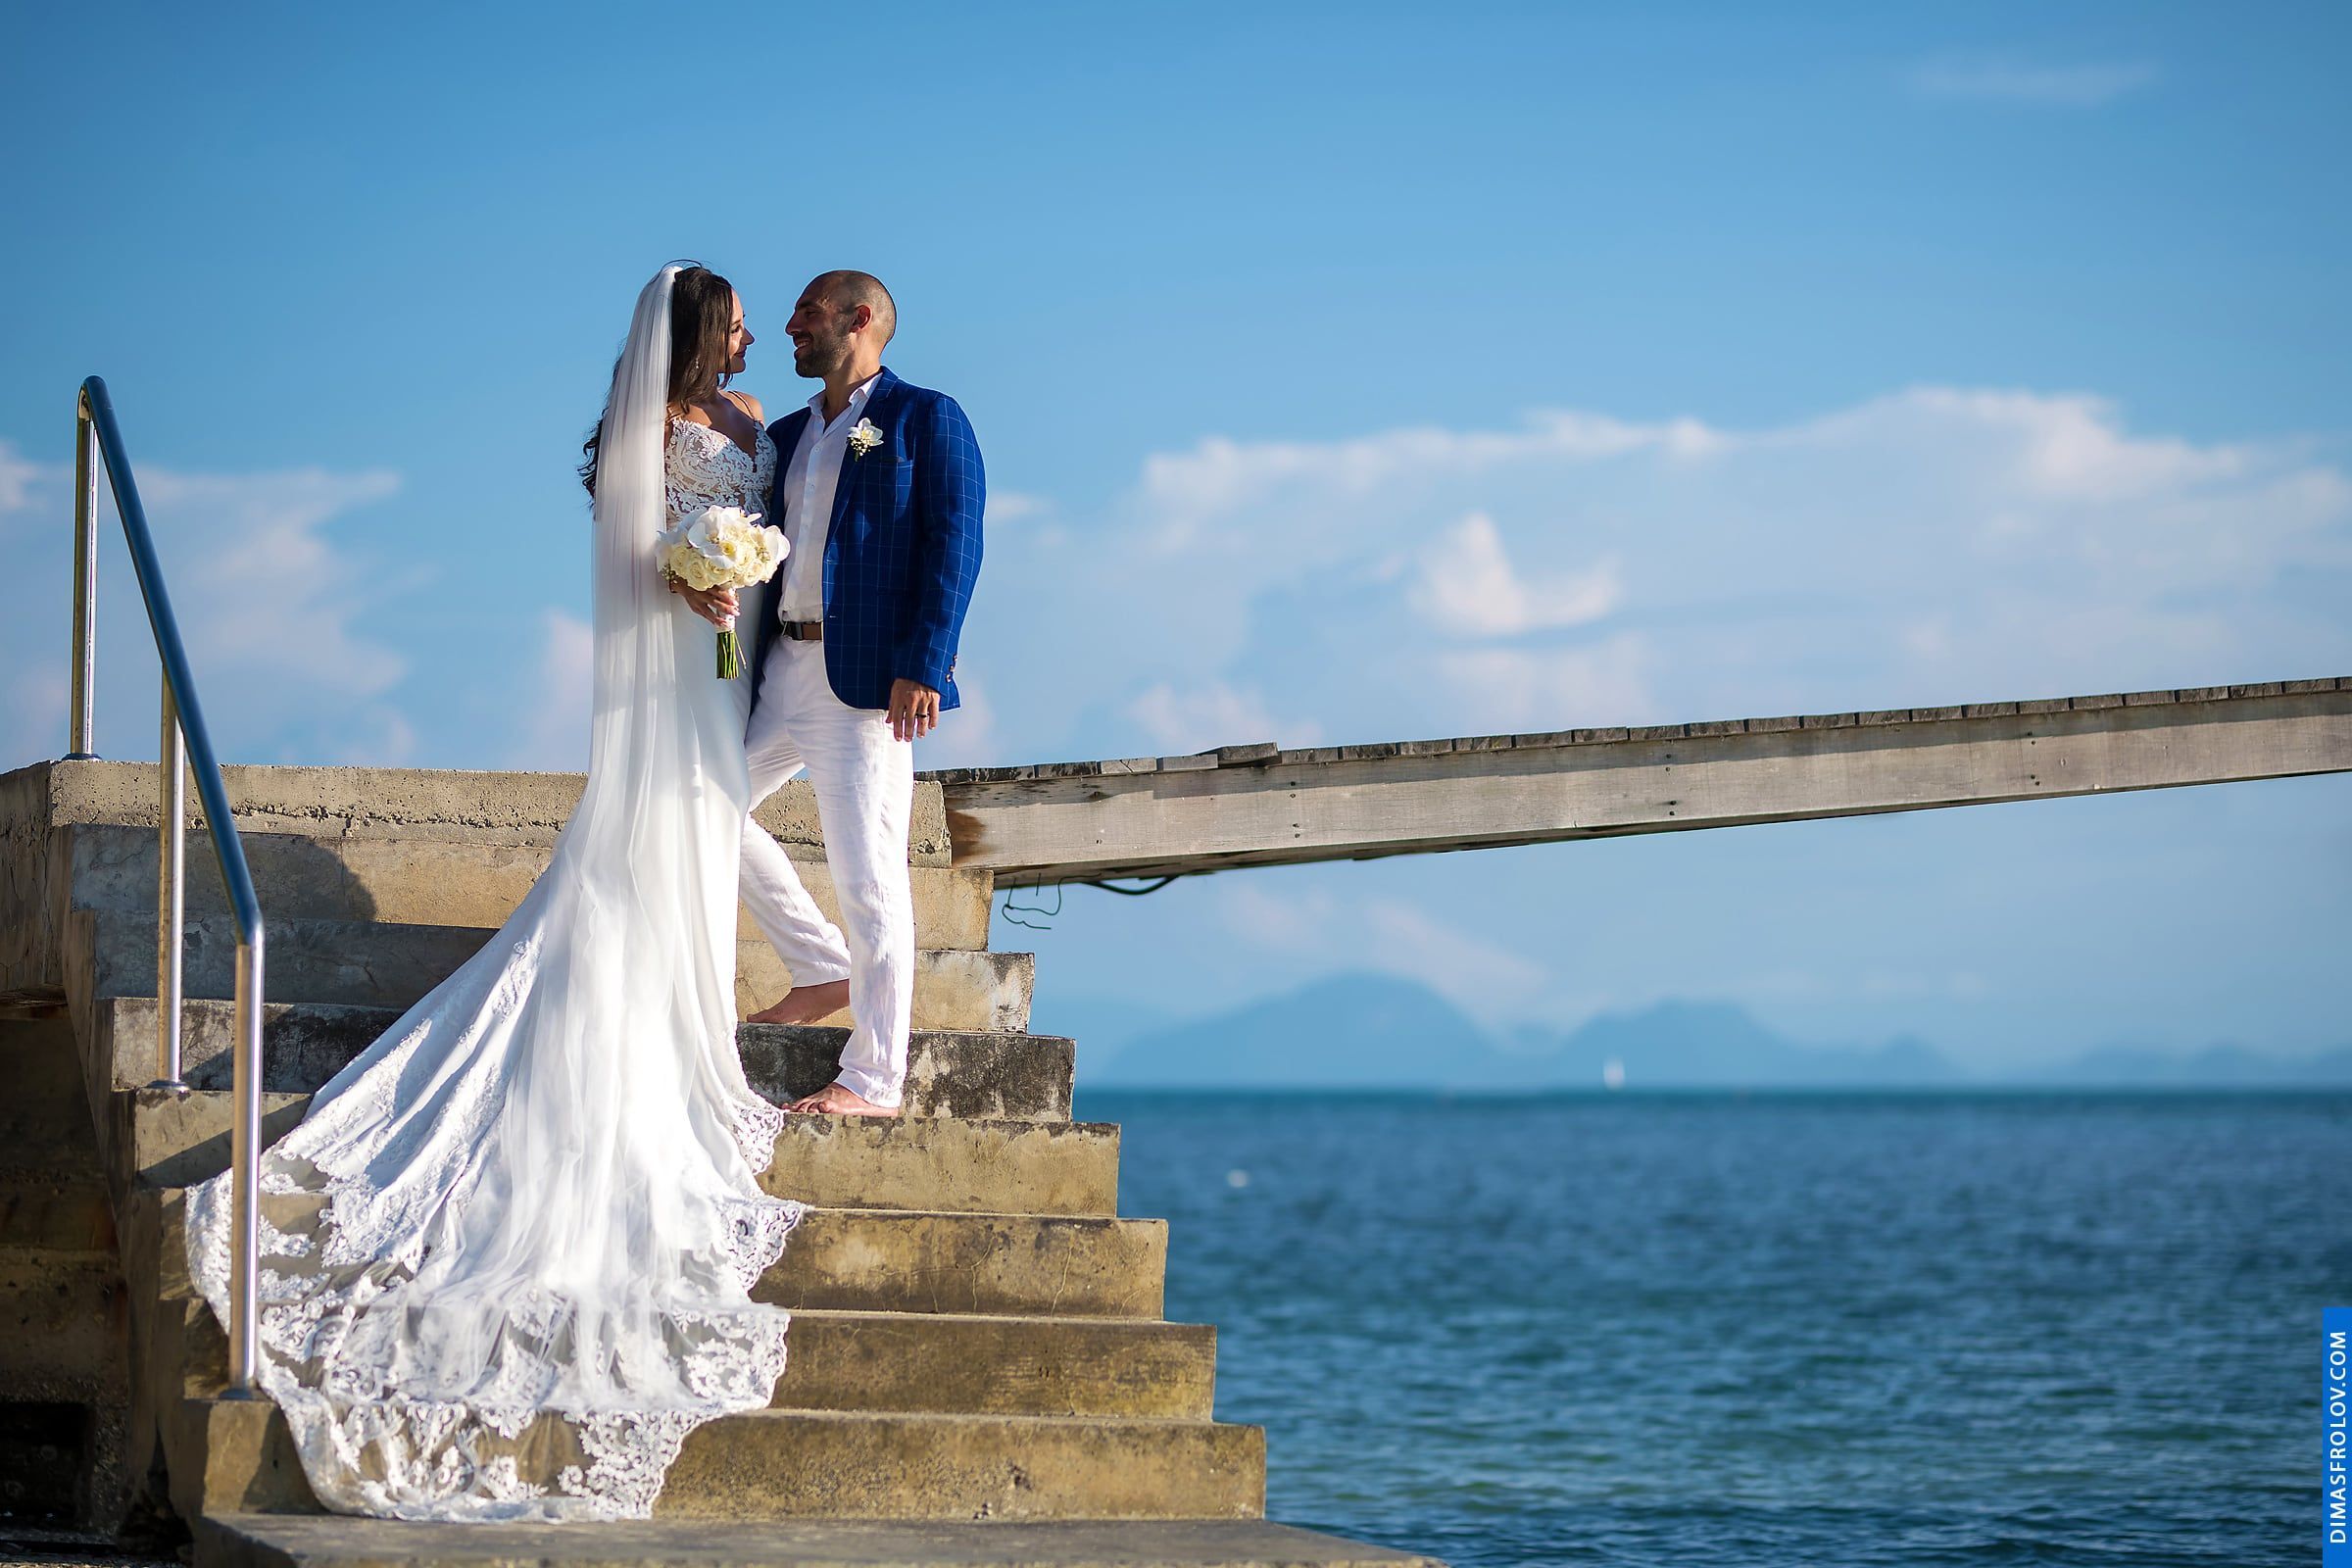 พิธีแต่งงาน ณ โรงแรมอินเตอร์คอนติเนนตัล เกาะสมุย - Natalie & Simon. บาทต่อภาพ 48217 (2023-05-04 03:54:37)